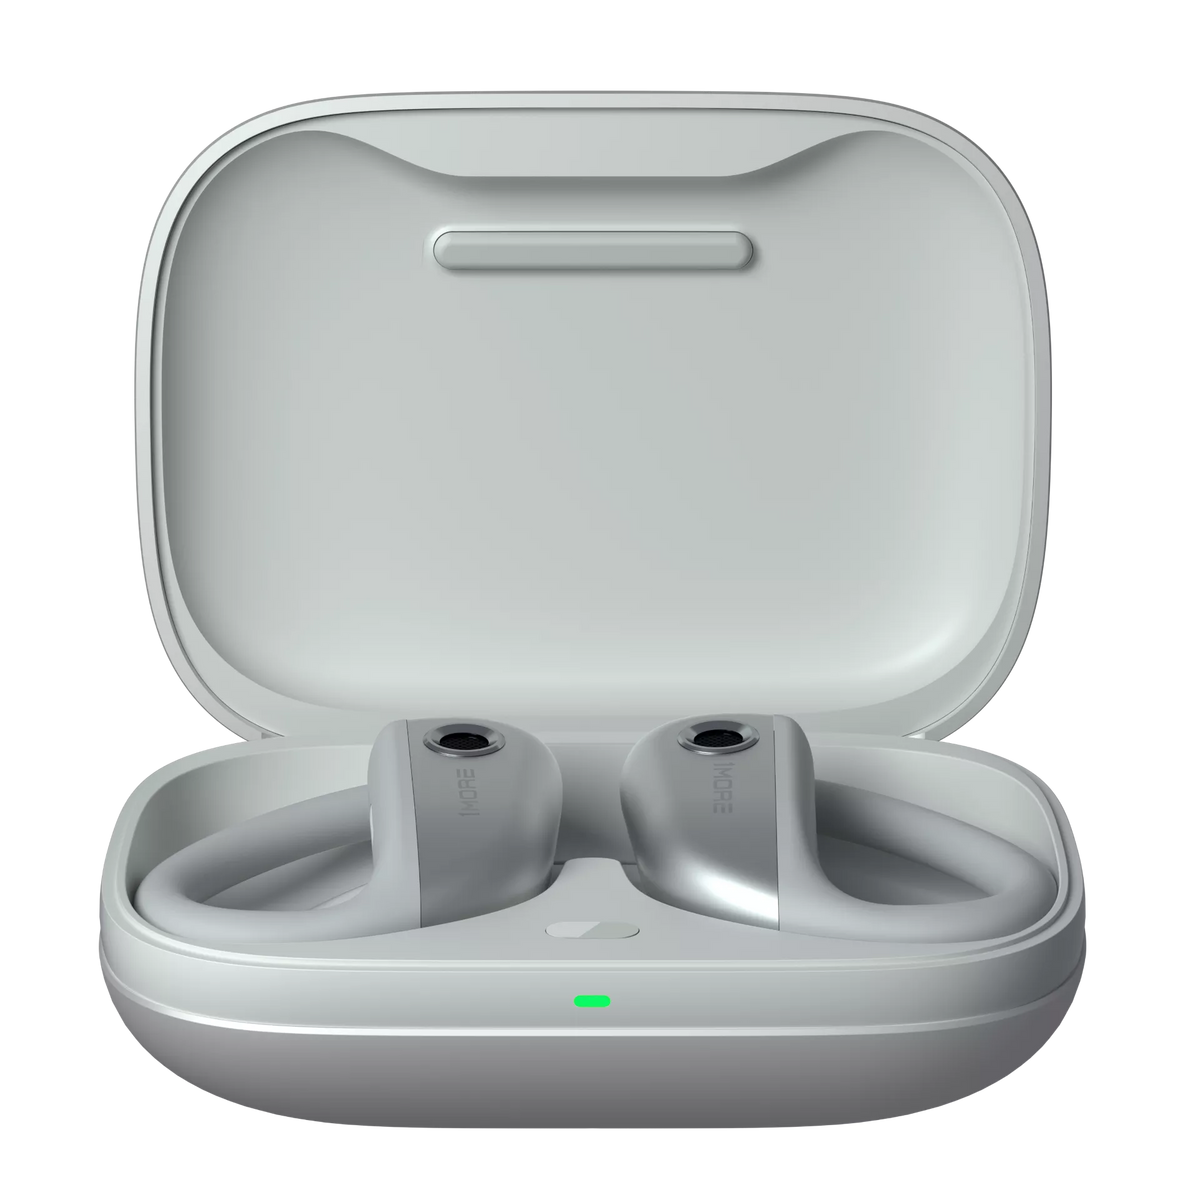 1MORE Fit S50 - Open-Ear True Wireless Sports Earphones